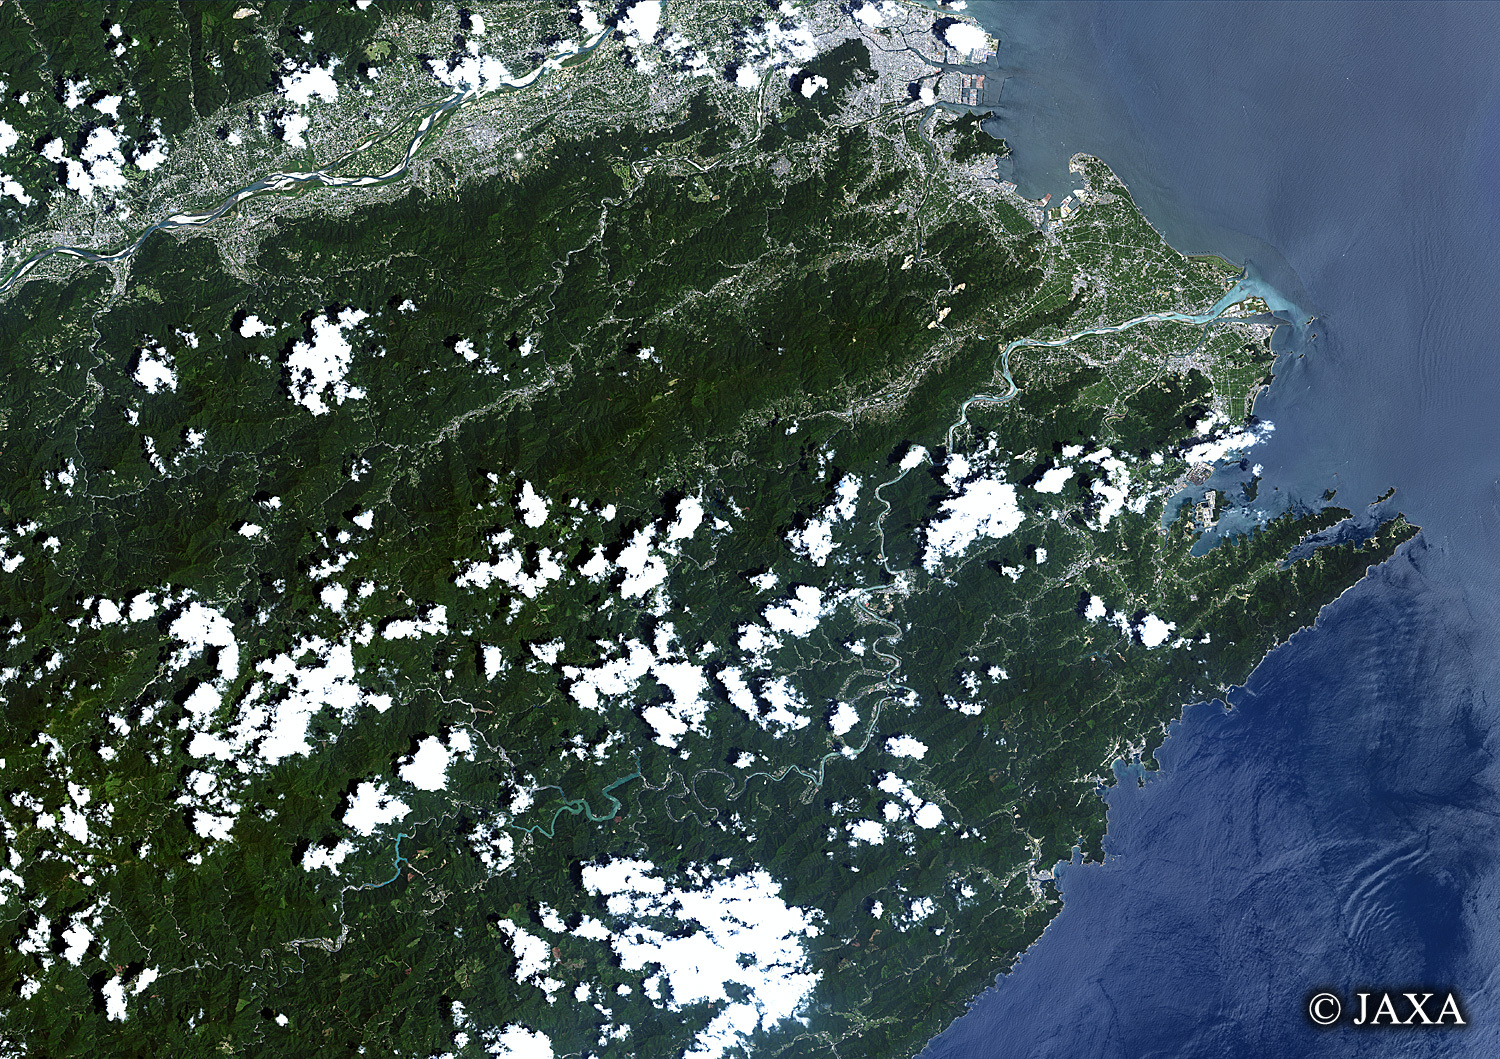 だいちから見た日本の都市 那賀川:衛星画像